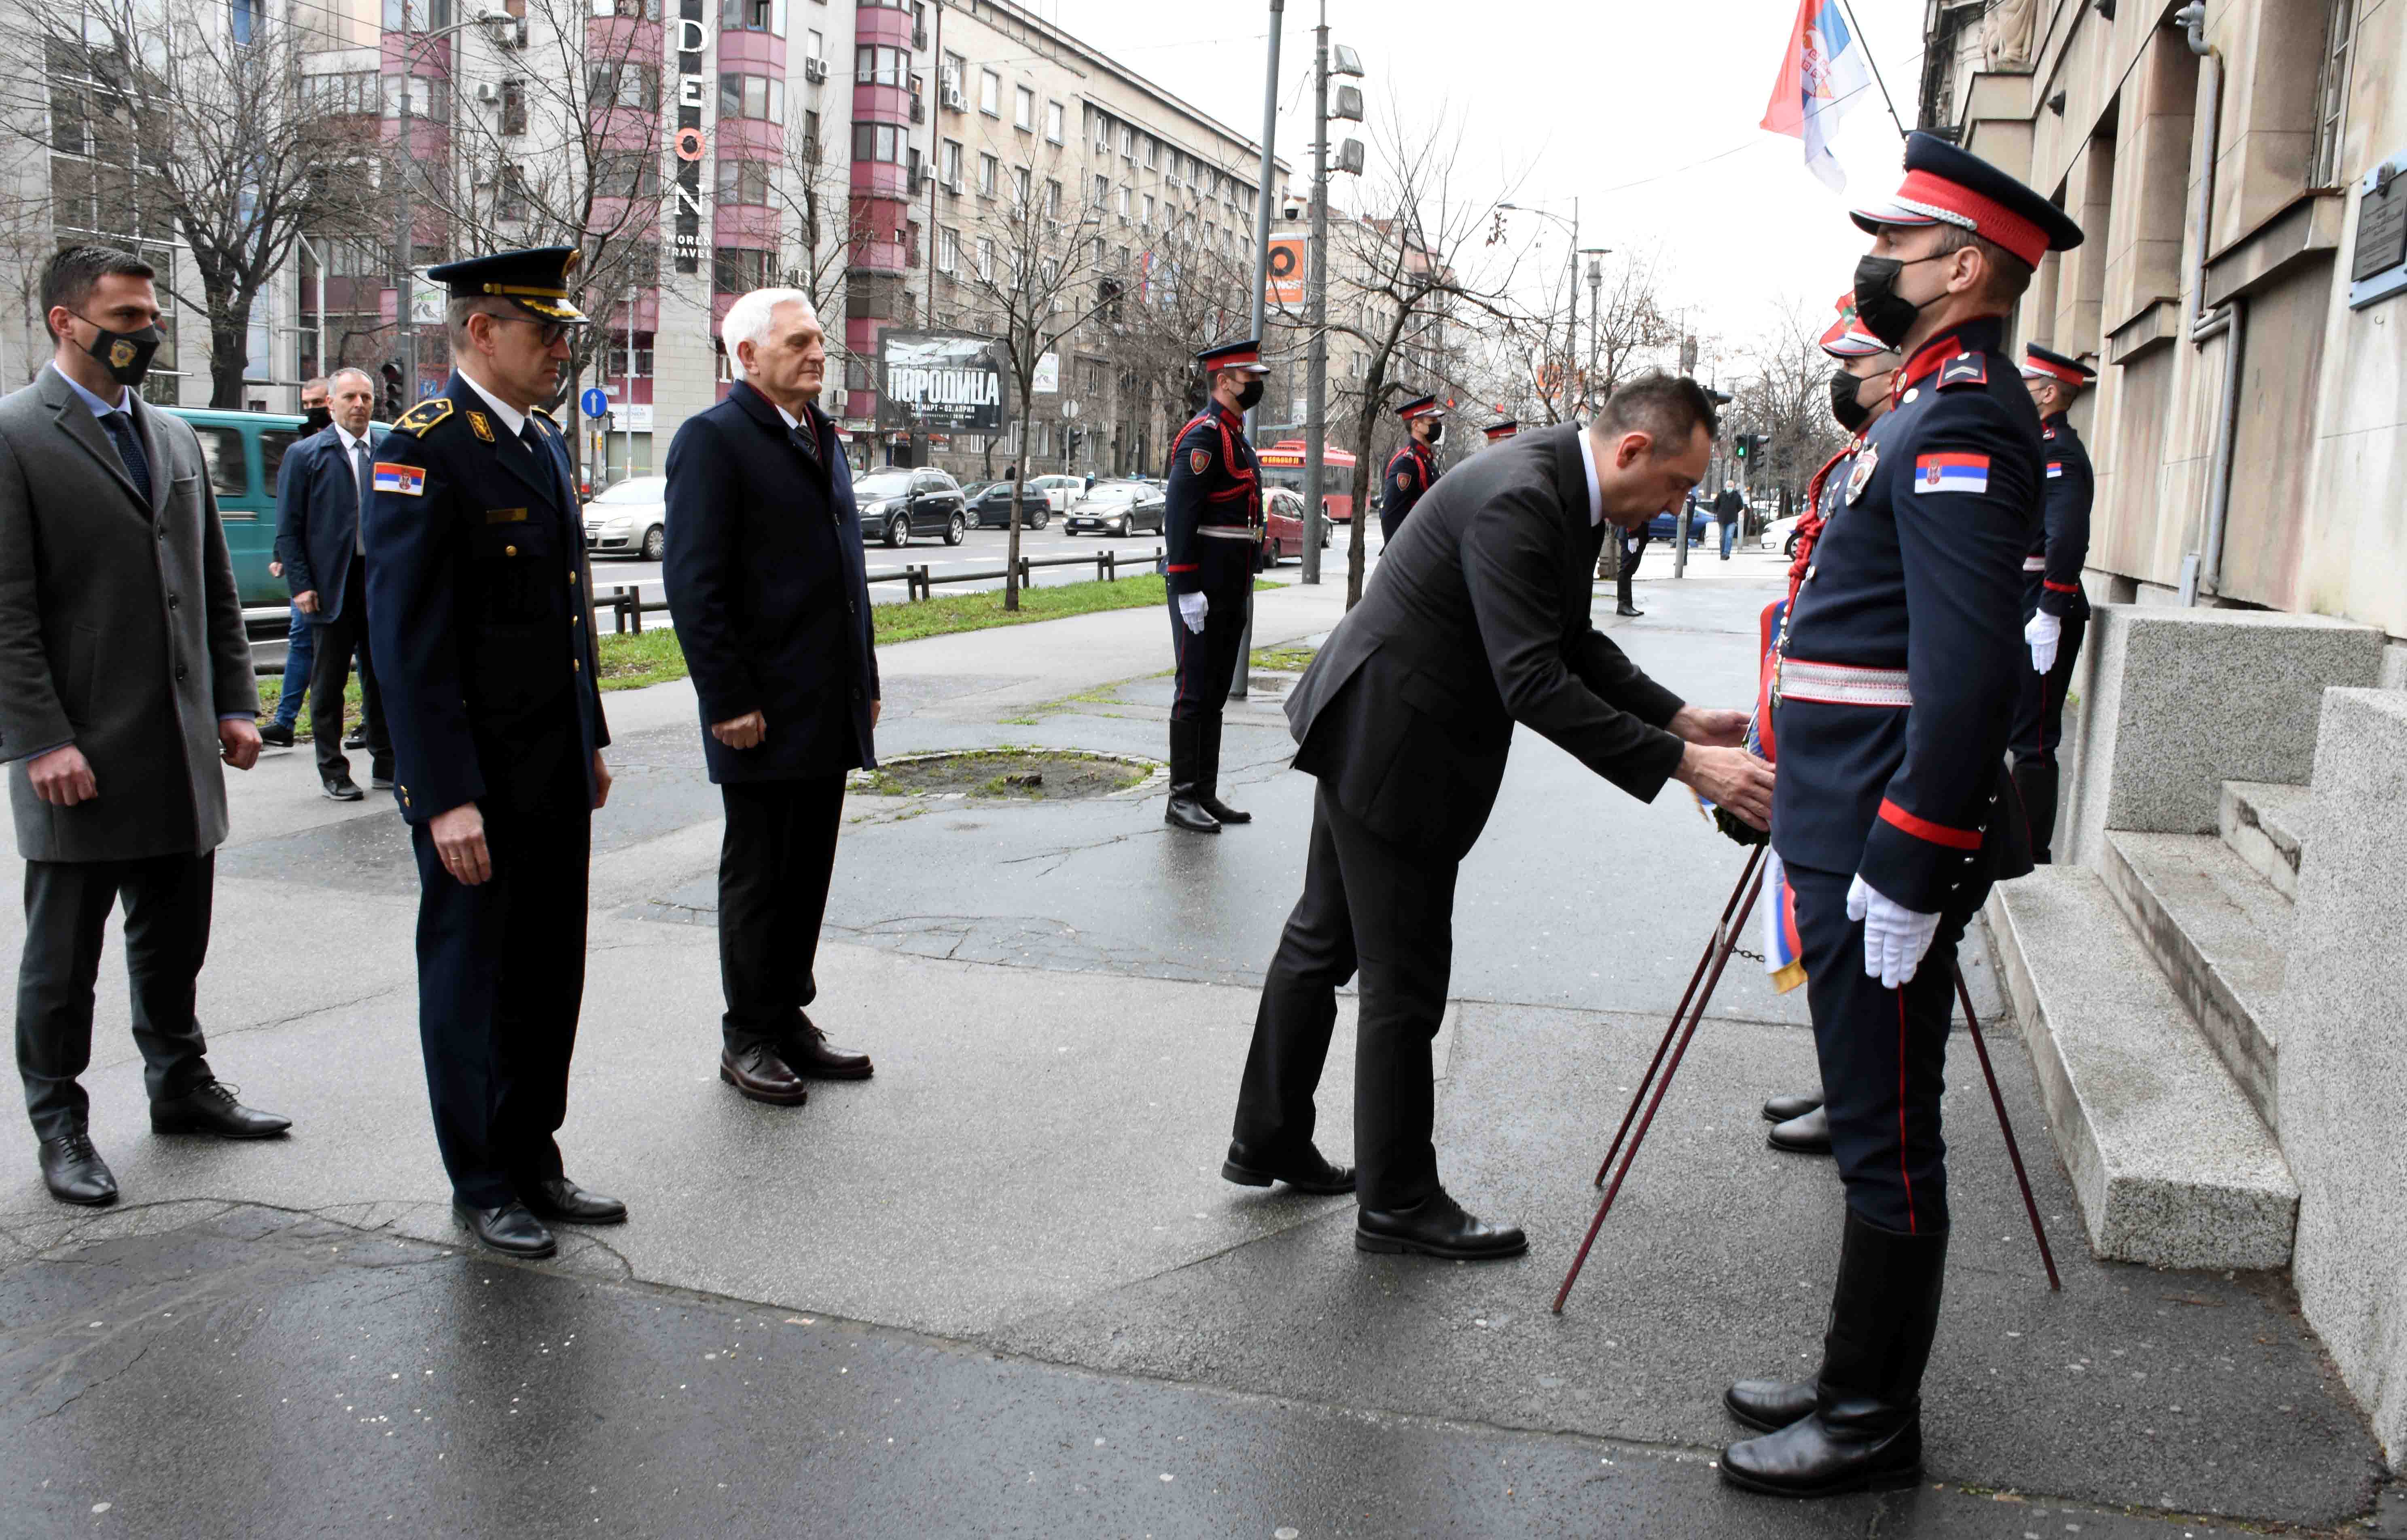 Ministar Vulin:  Srbija nikada neće zaboraviti i prestati da traži pravdu